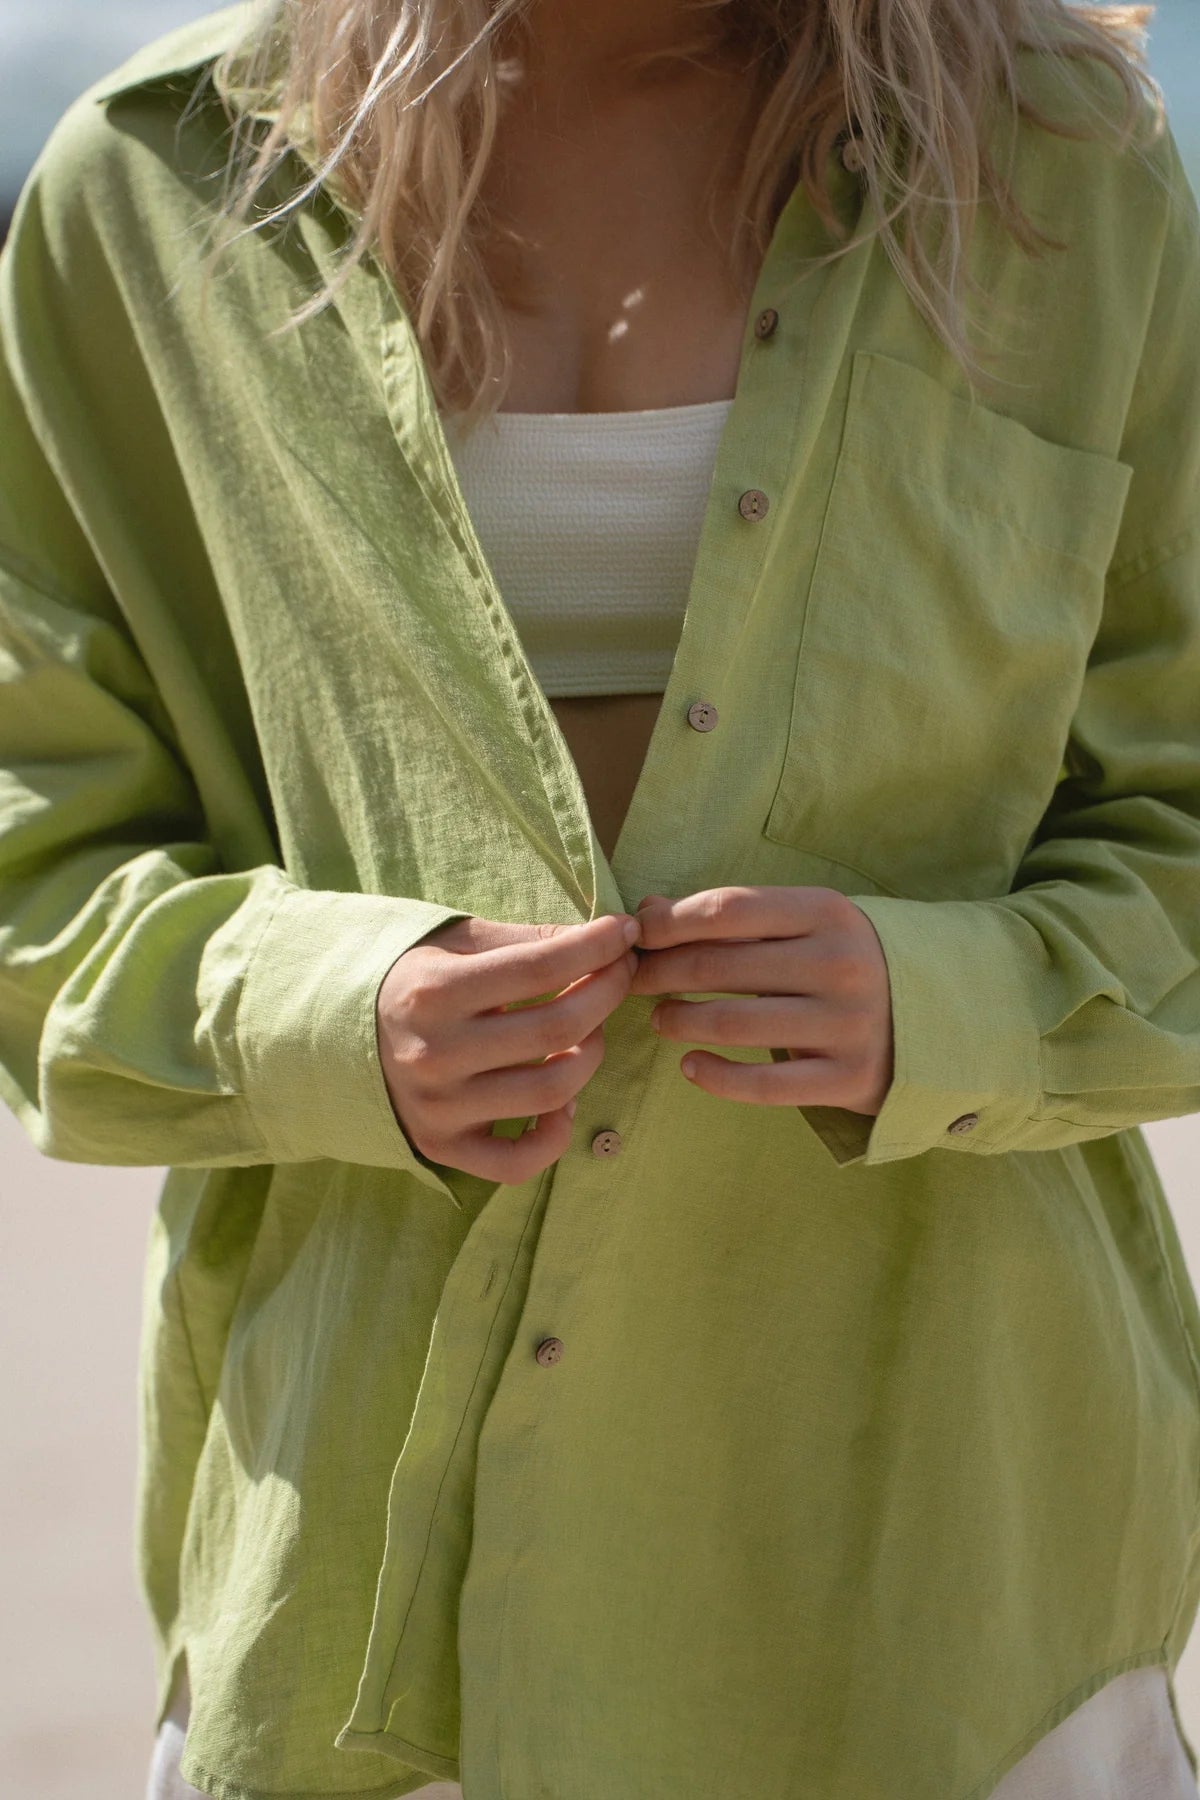 Lemongrass green linen shirt with long sleeves